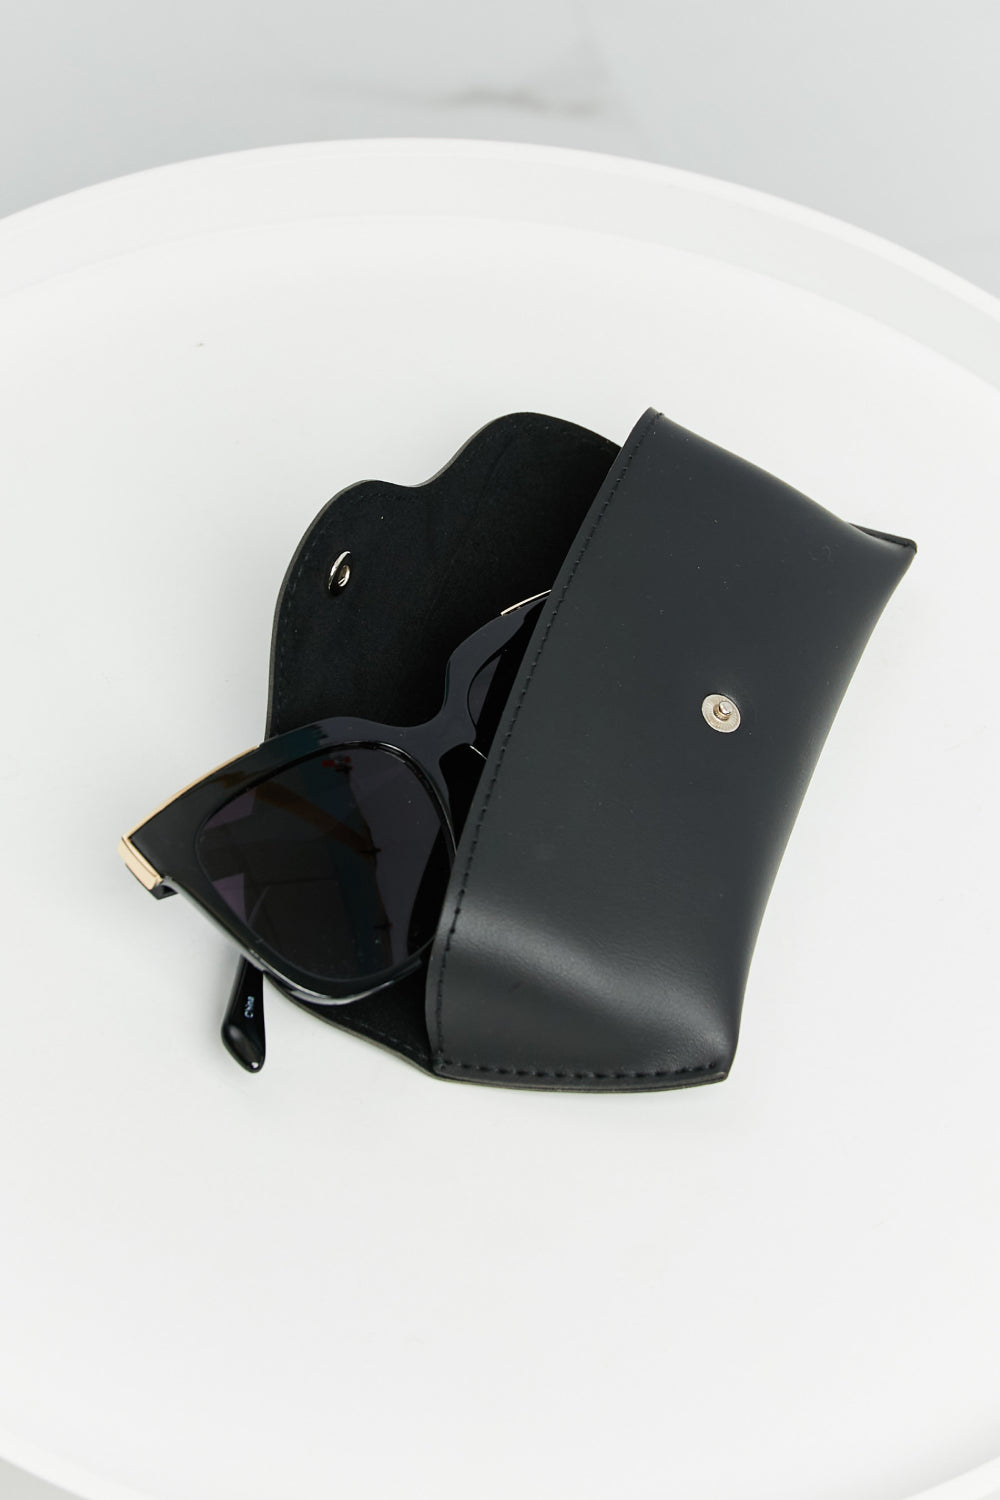 Full Rim Sunglasses-Trendsi-Burnt Umber-One Size-[option4]-[option5]-[option6]-[option7]-[option8]-Shop-Boutique-Clothing-for-Women-Online